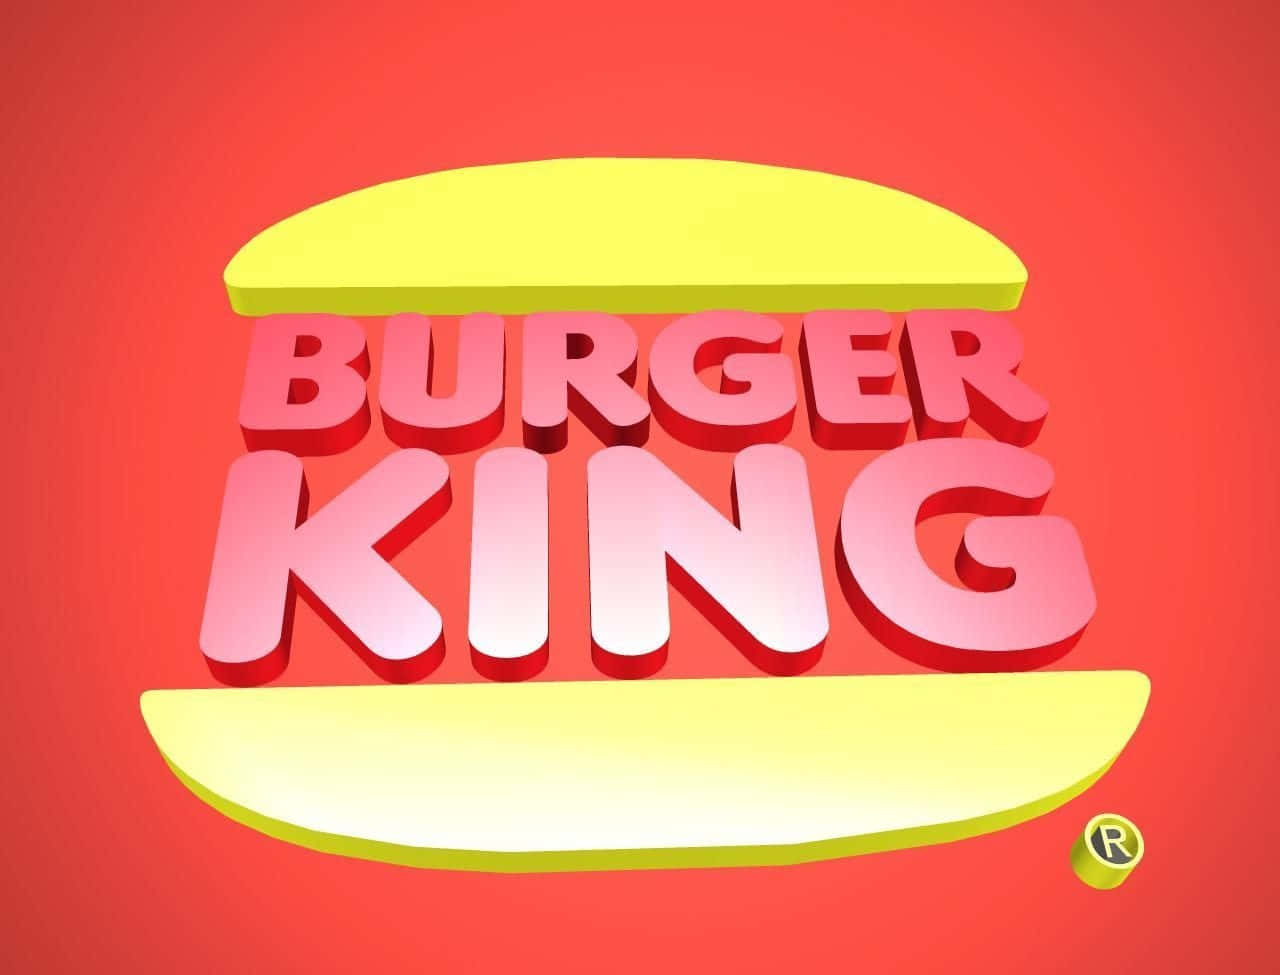 Desbloqueiesuas Papilas Gustativas Com Um Suculento E Delicioso Whopper Burger Do Burger King.